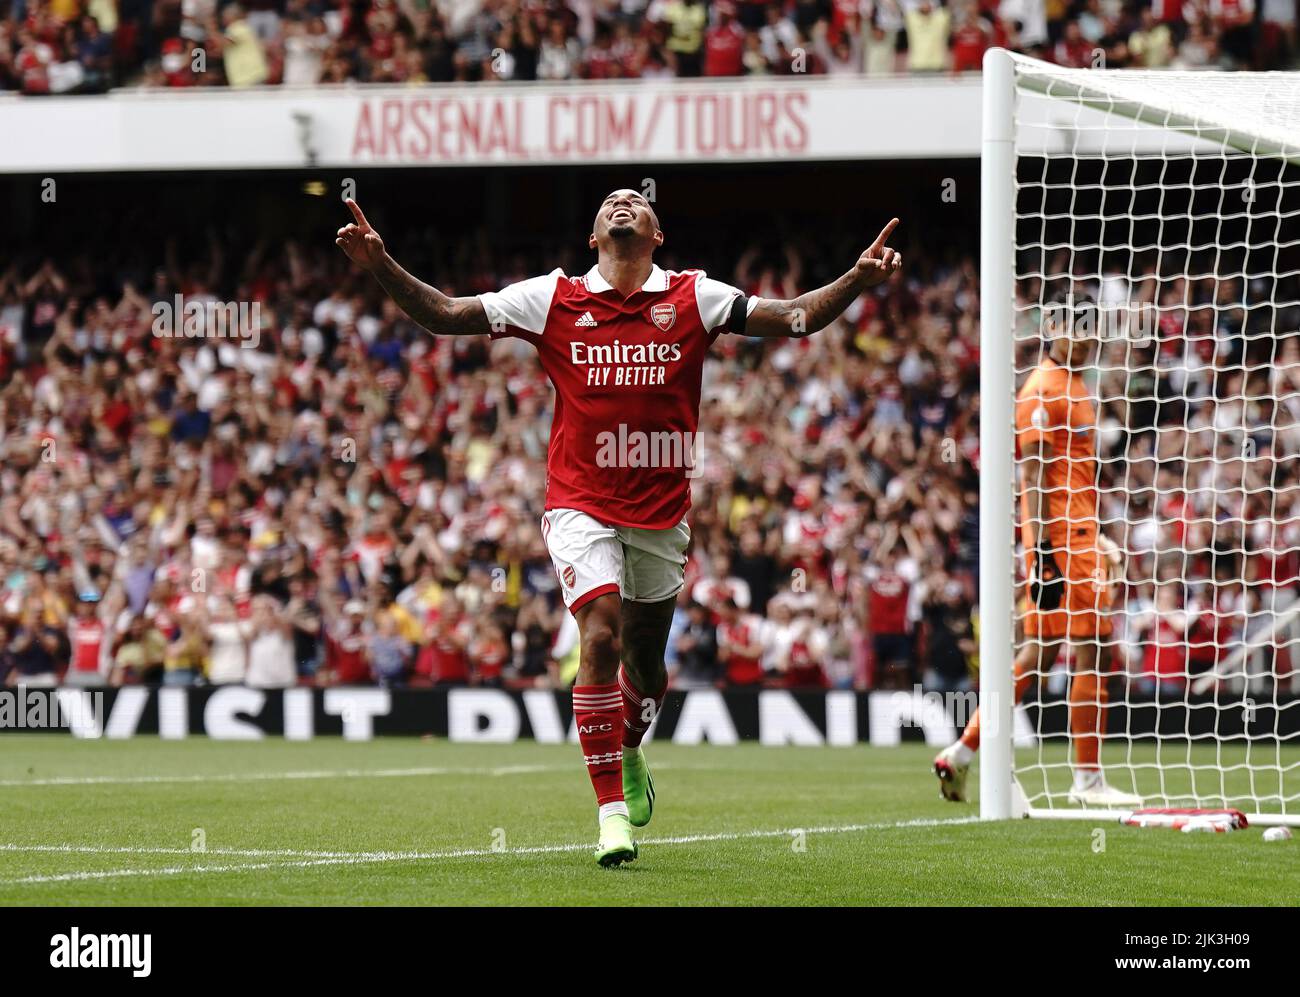 Gabriel Jesus d'Arsenal célèbre le troisième but de son équipe lors de la finale de la coupe Emirates au stade Emirates de Londres. Date de la photo: Samedi 30 juillet 2022. Banque D'Images